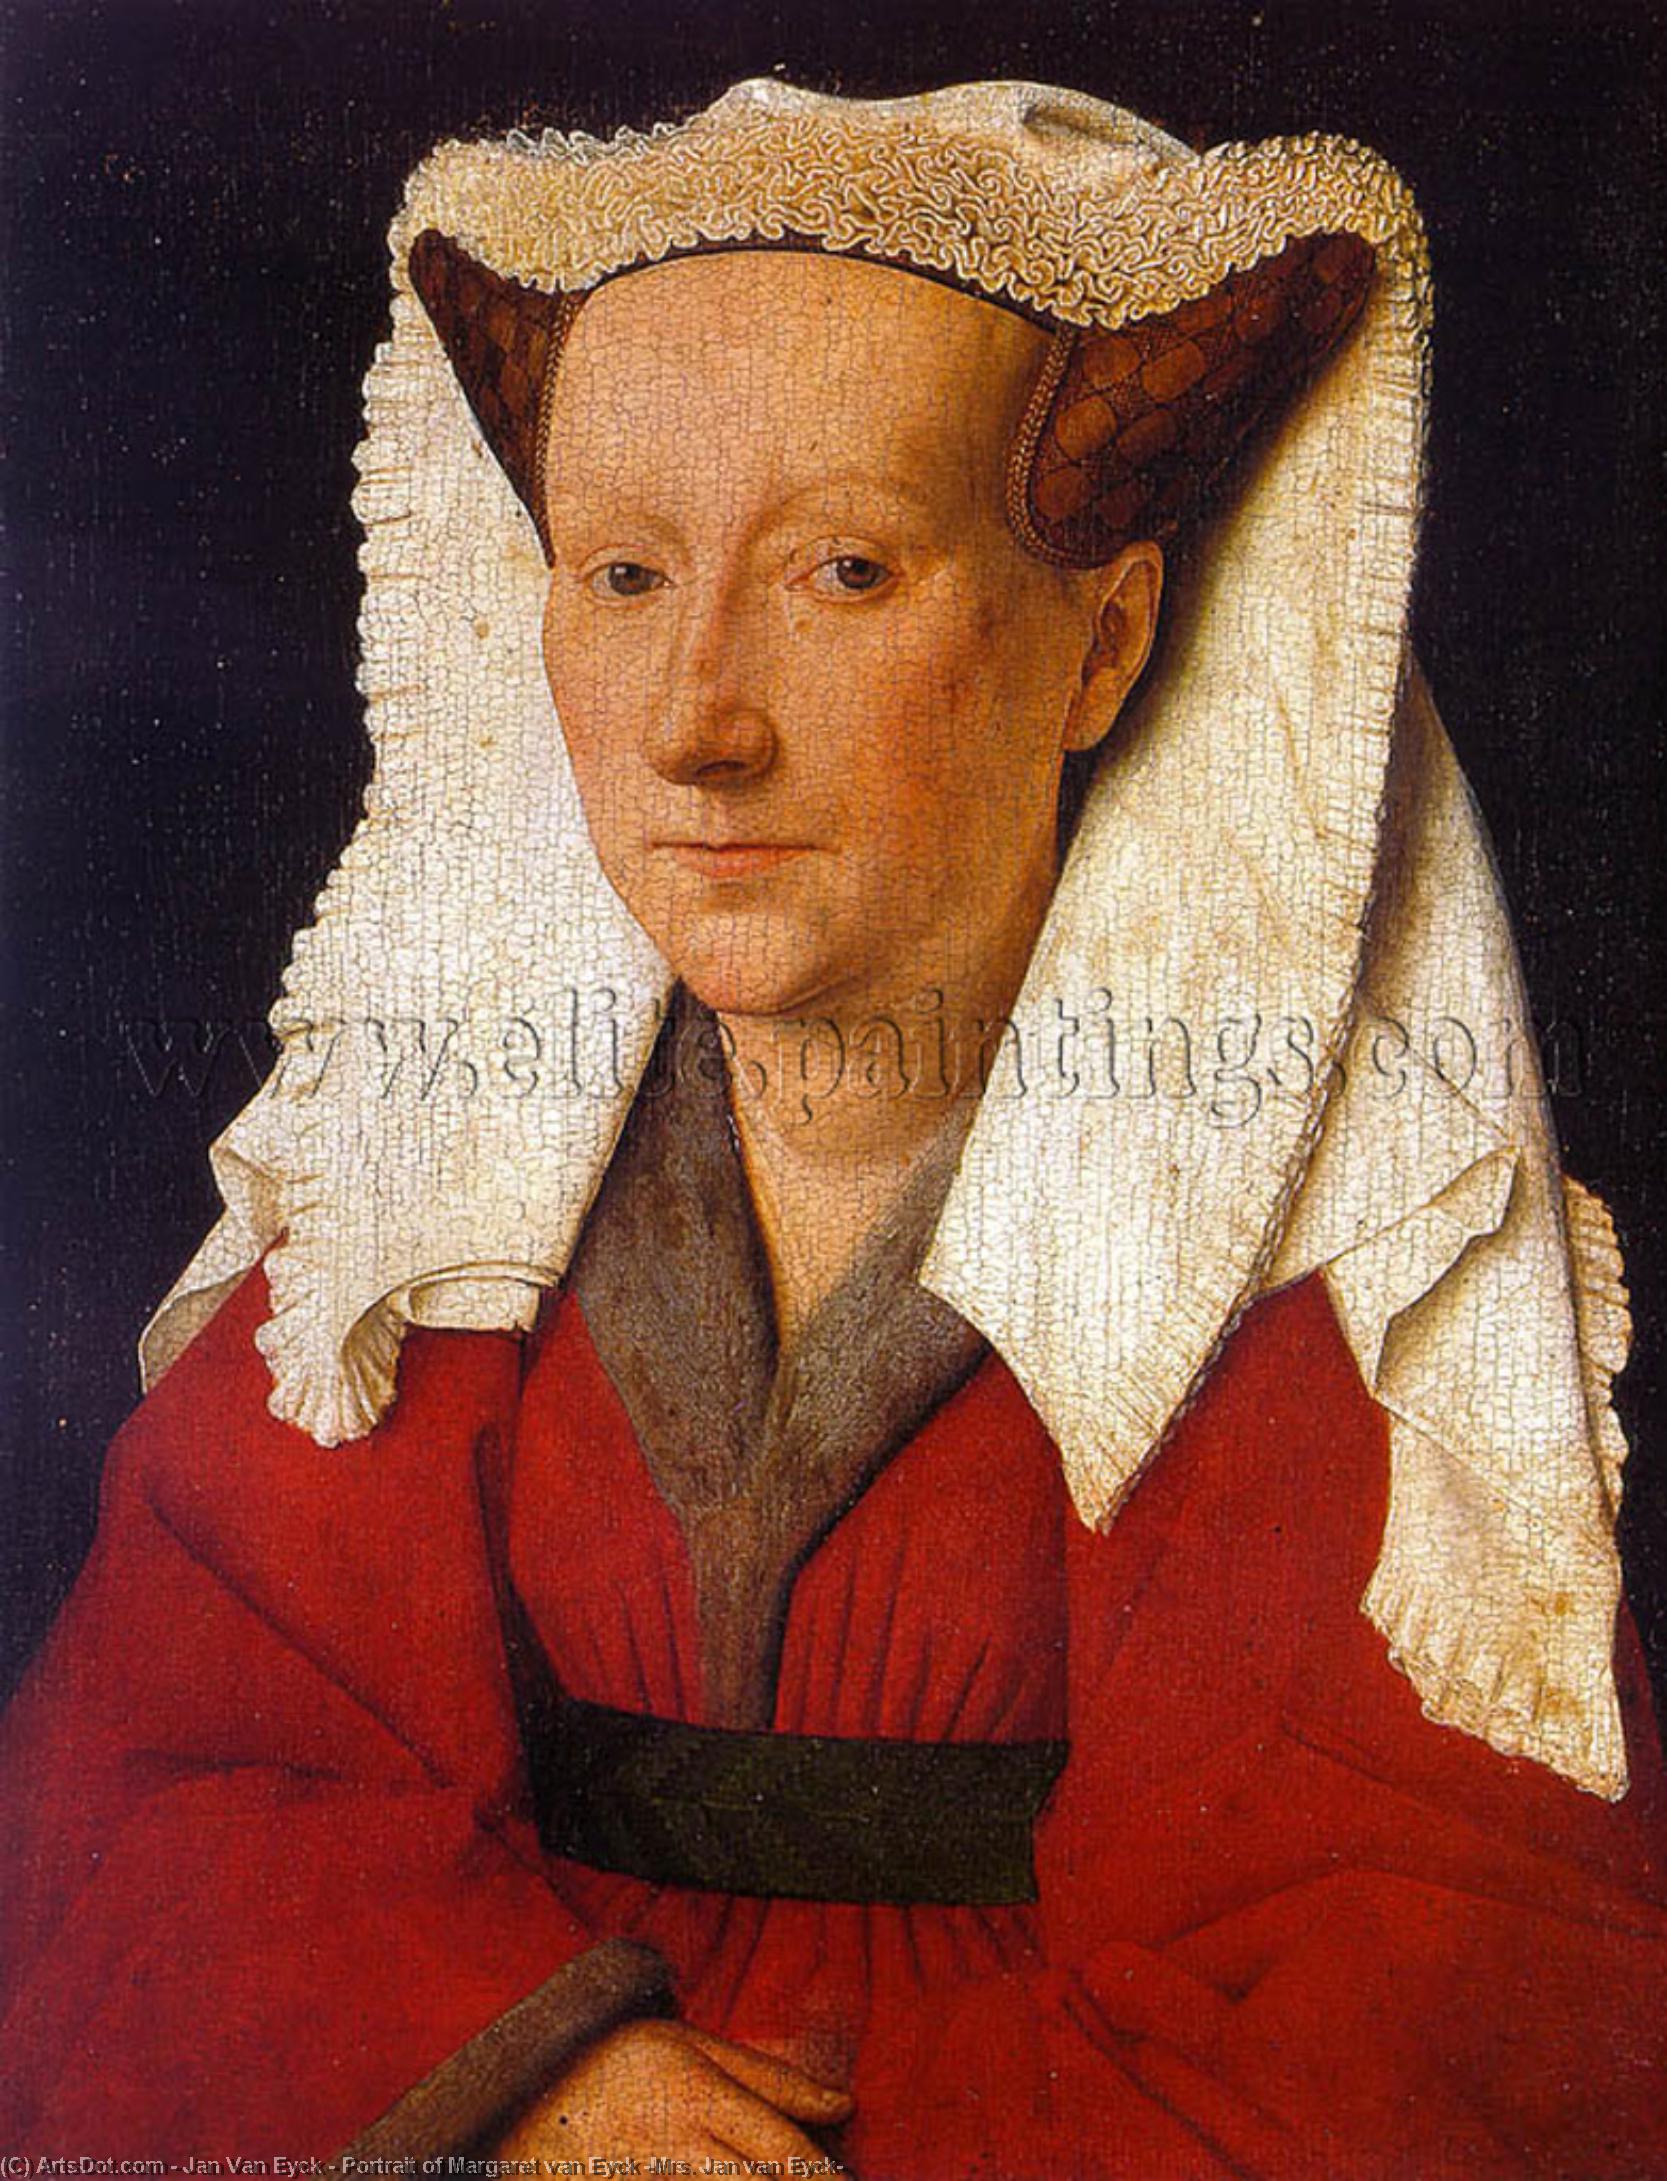 WikiOO.org - Encyclopedia of Fine Arts - Maalaus, taideteos Jan Van Eyck - Portrait of Margaret van Eyck (Mrs. Jan van Eyck)